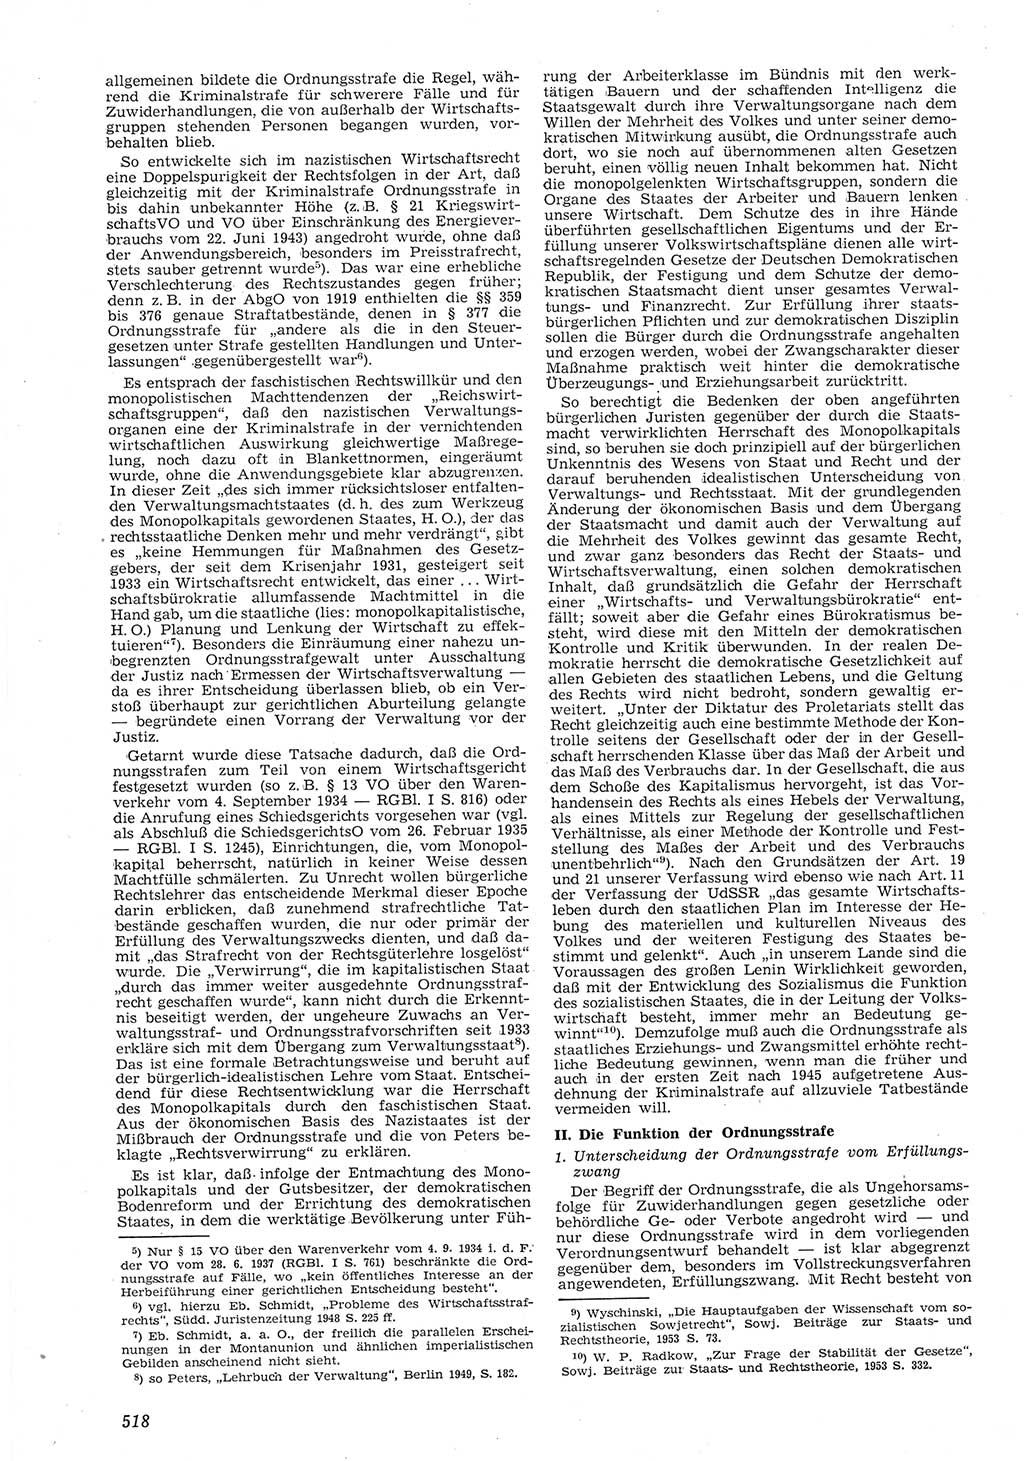 Neue Justiz (NJ), Zeitschrift für Recht und Rechtswissenschaft [Deutsche Demokratische Republik (DDR)], 8. Jahrgang 1954, Seite 518 (NJ DDR 1954, S. 518)